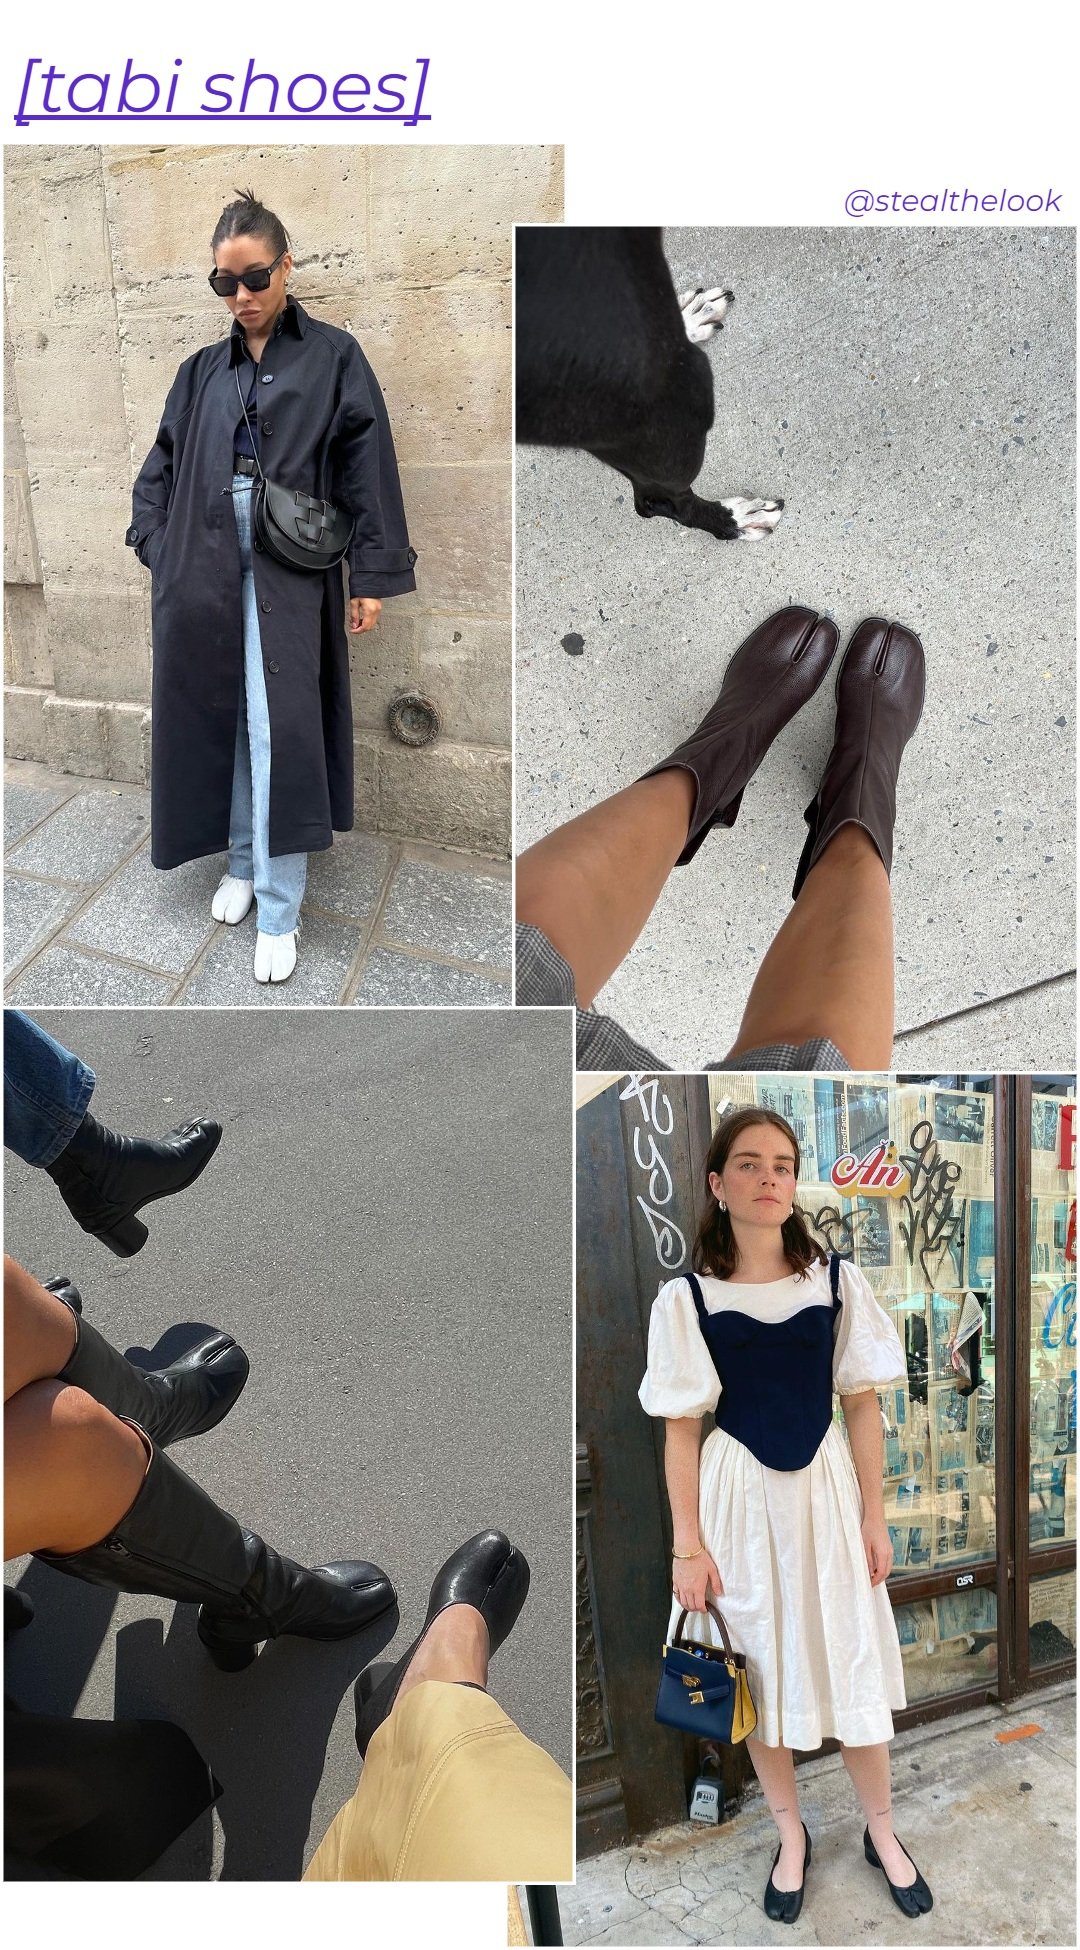 @taniceelizabeth - casaco trench coat preto, jeans, e botas tabi brancas - sapatos tendência - inverno - mulher em pé na rua usando óculos de sol - https://stealthelook.com.br